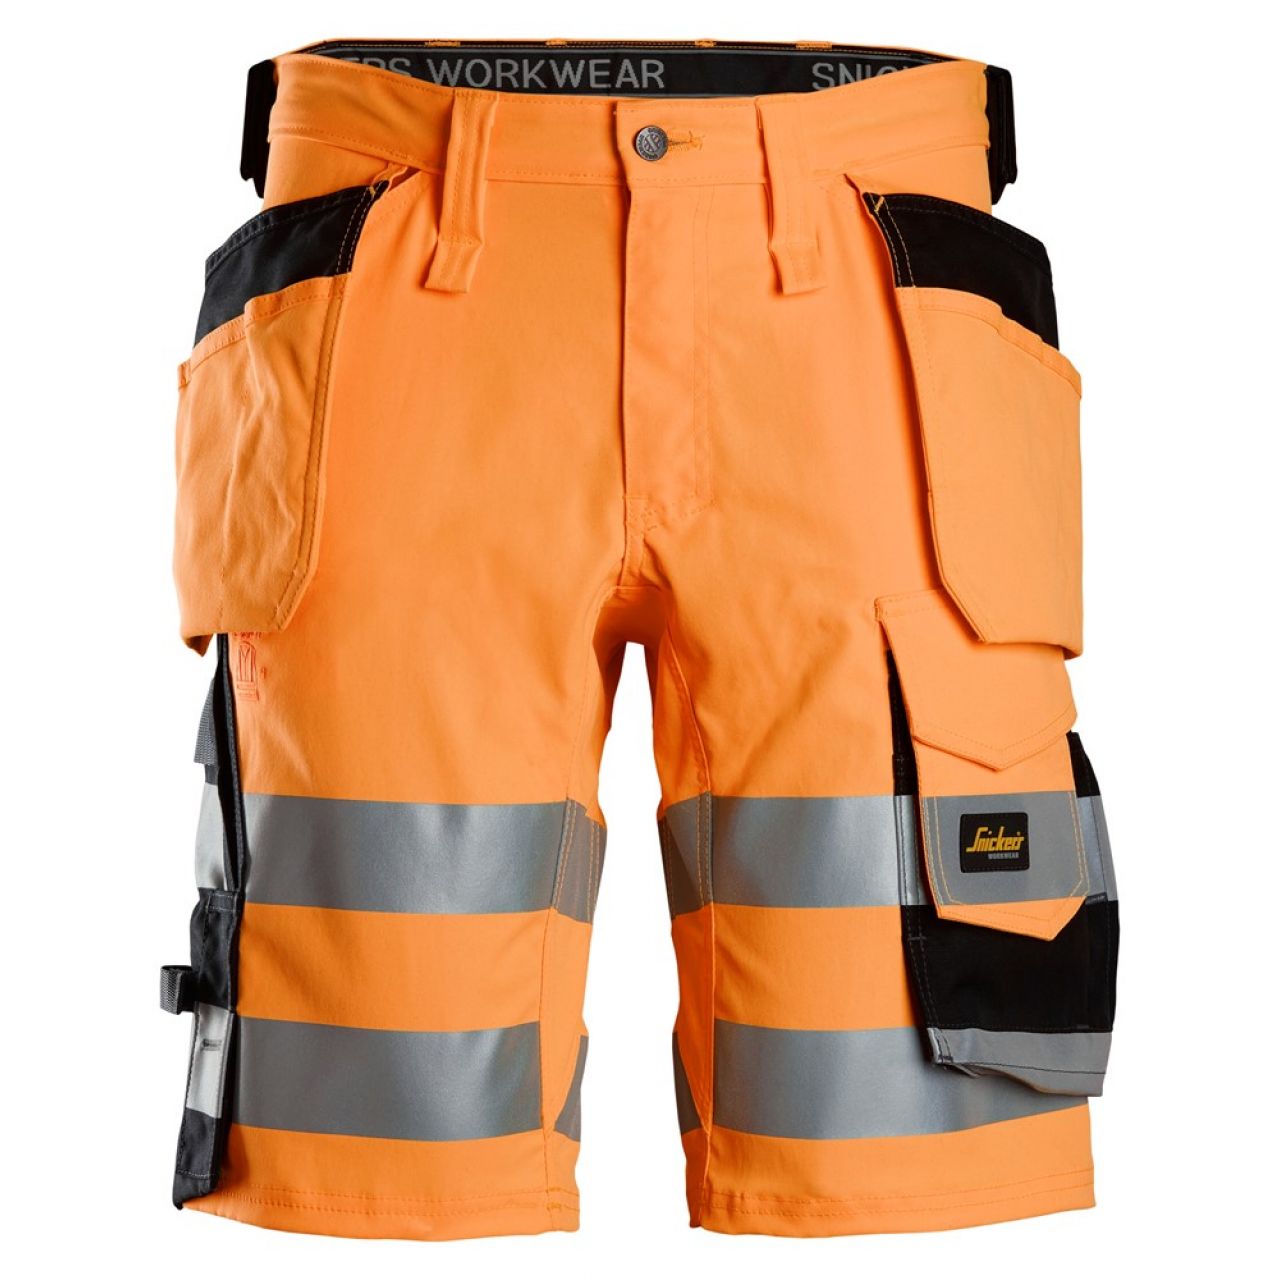 6135 Pantalones cortos de trabajo elásticos de alta visibilidad clase 1 con bolsillos flotantes naranja-negro talla 70